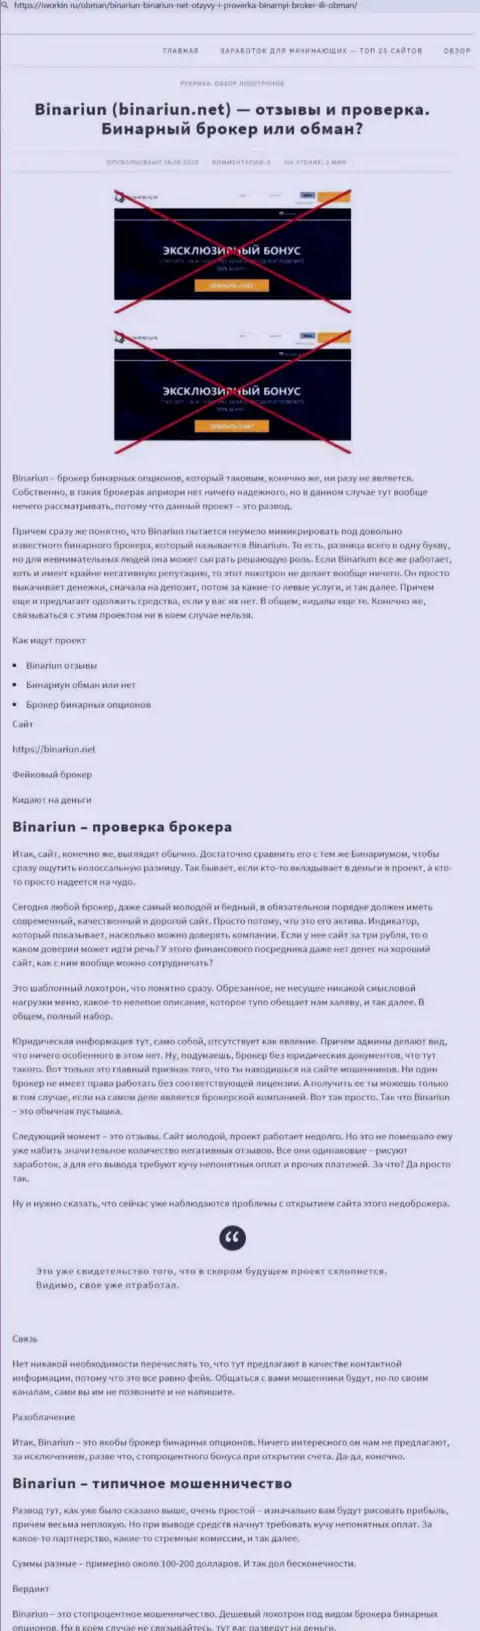 Binariun Net - это МОШЕННИКИ !!! Особенности работы ЛОХОТРОНА (обзор мошеннических действий)